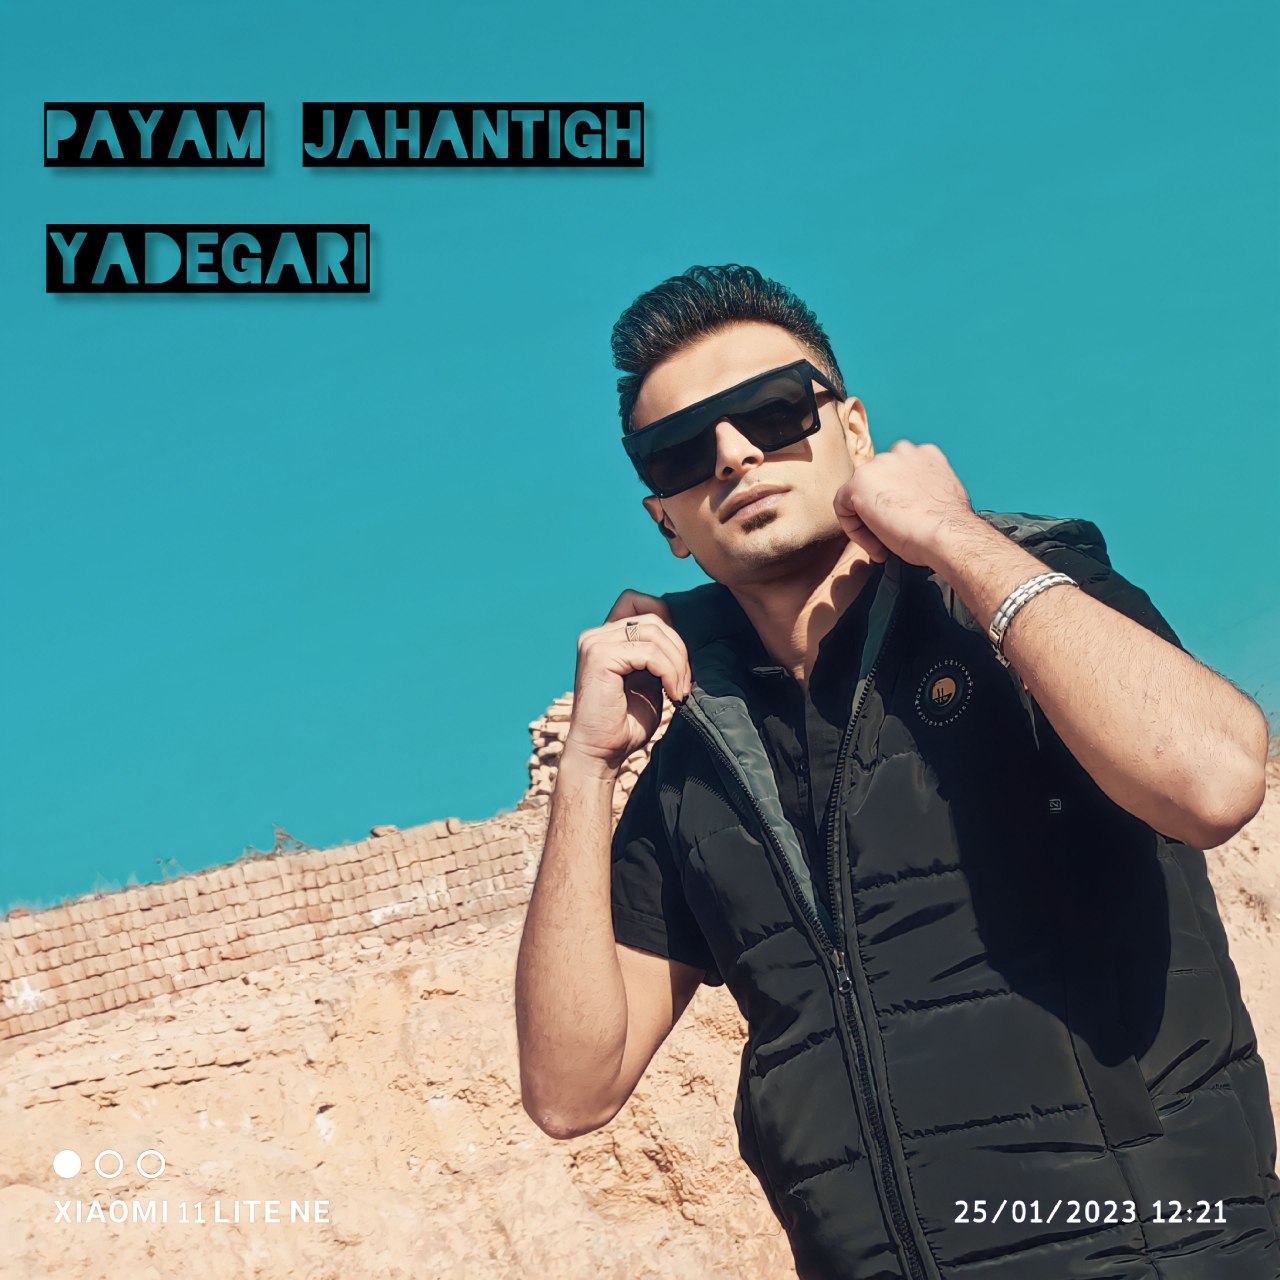 Payam Jahantigh – Yadegari